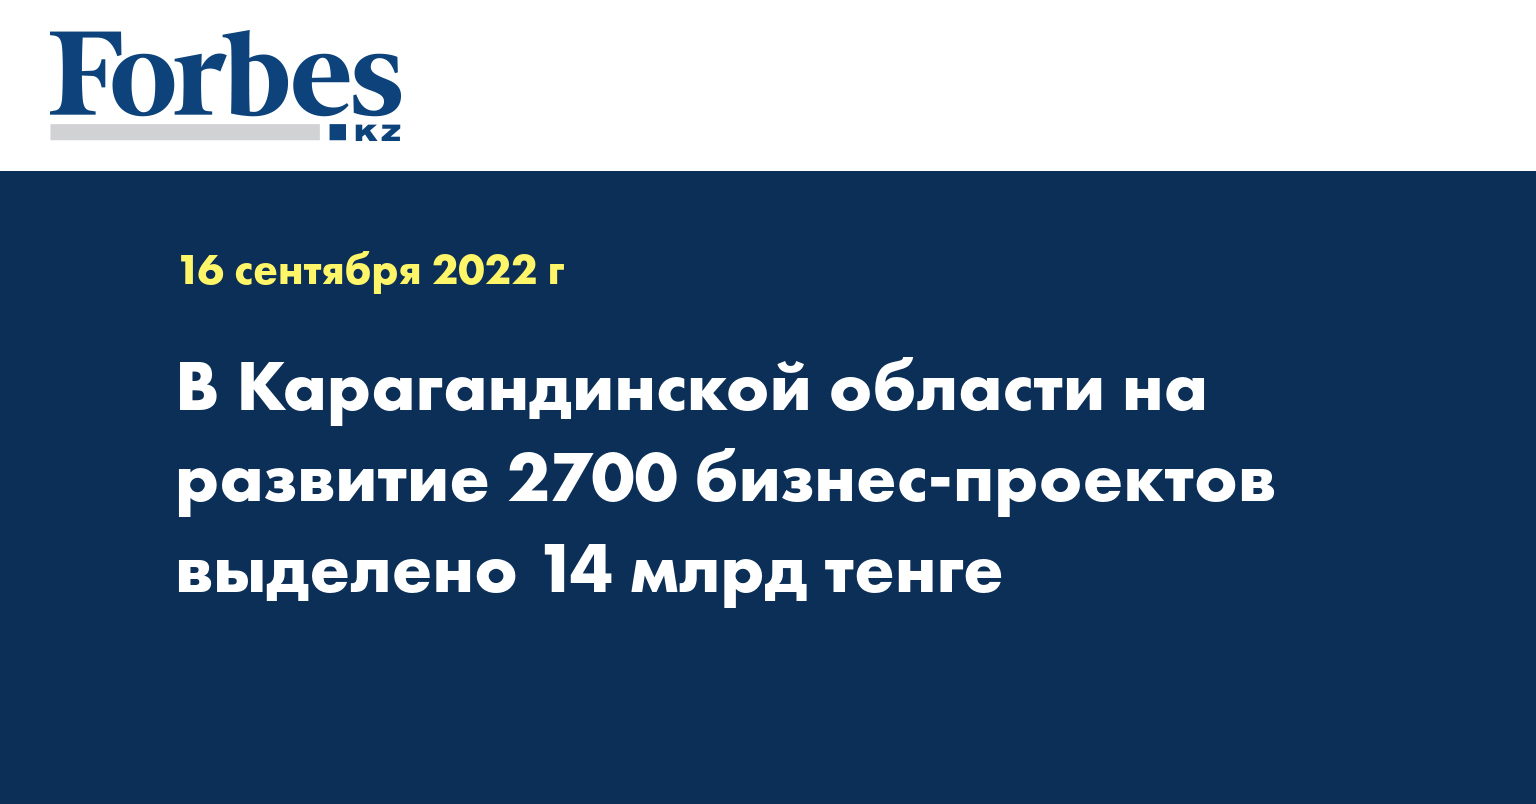 В Карагандинской области на развитие 2700 бизнес-проектов выделено 14 млрд тенге